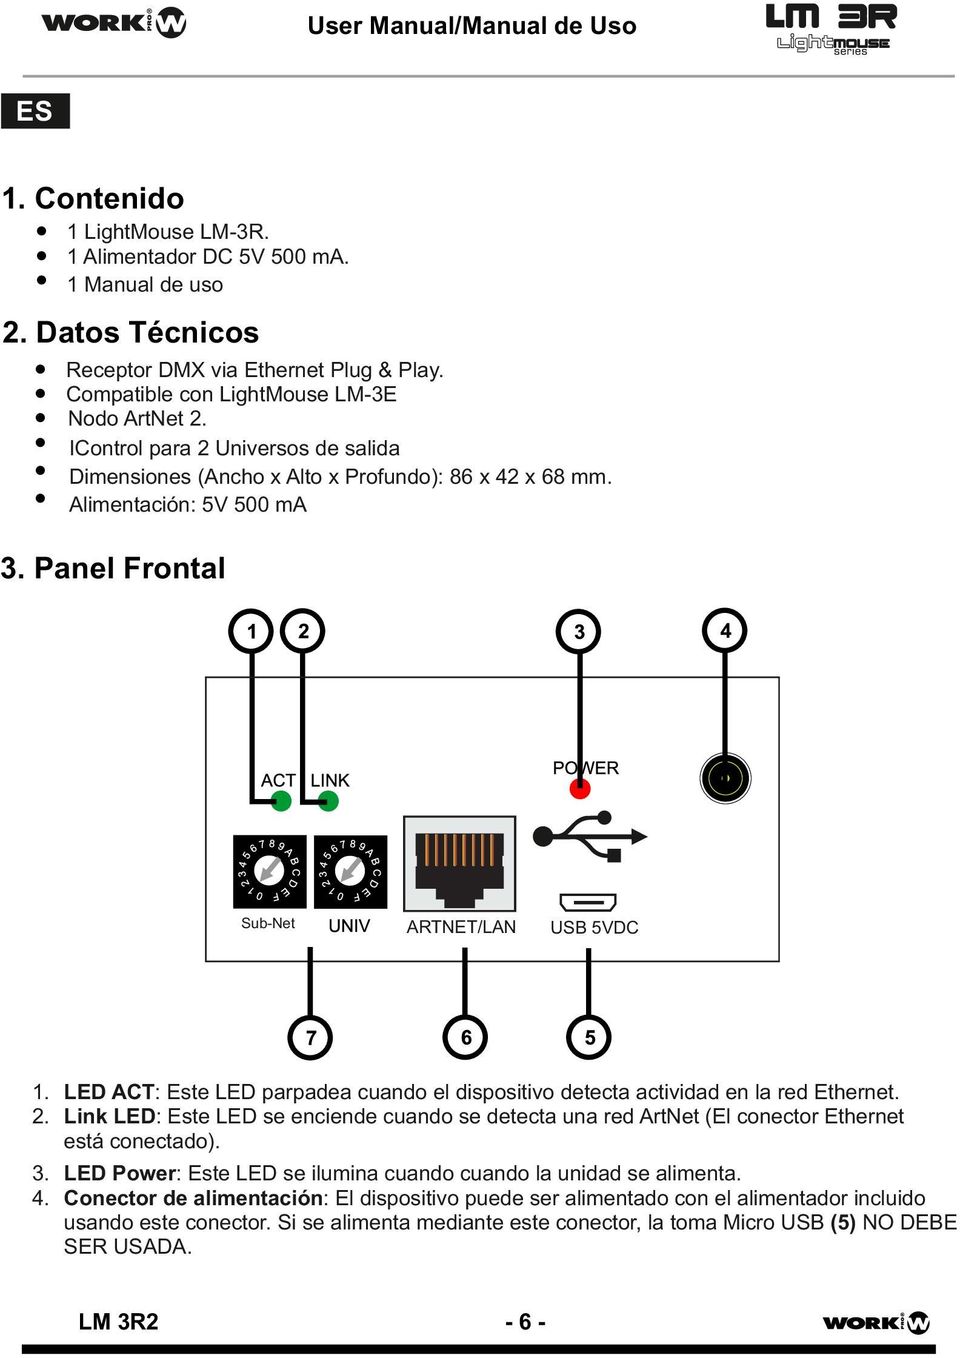 LED ACT: Este LED parpadea cuando el dispositivo detecta actividad en la red Ethernet. 2. Link LED: Este LED se enciende cuando se detecta una red ArtNet (El conector Ethernet está conectado). 3.